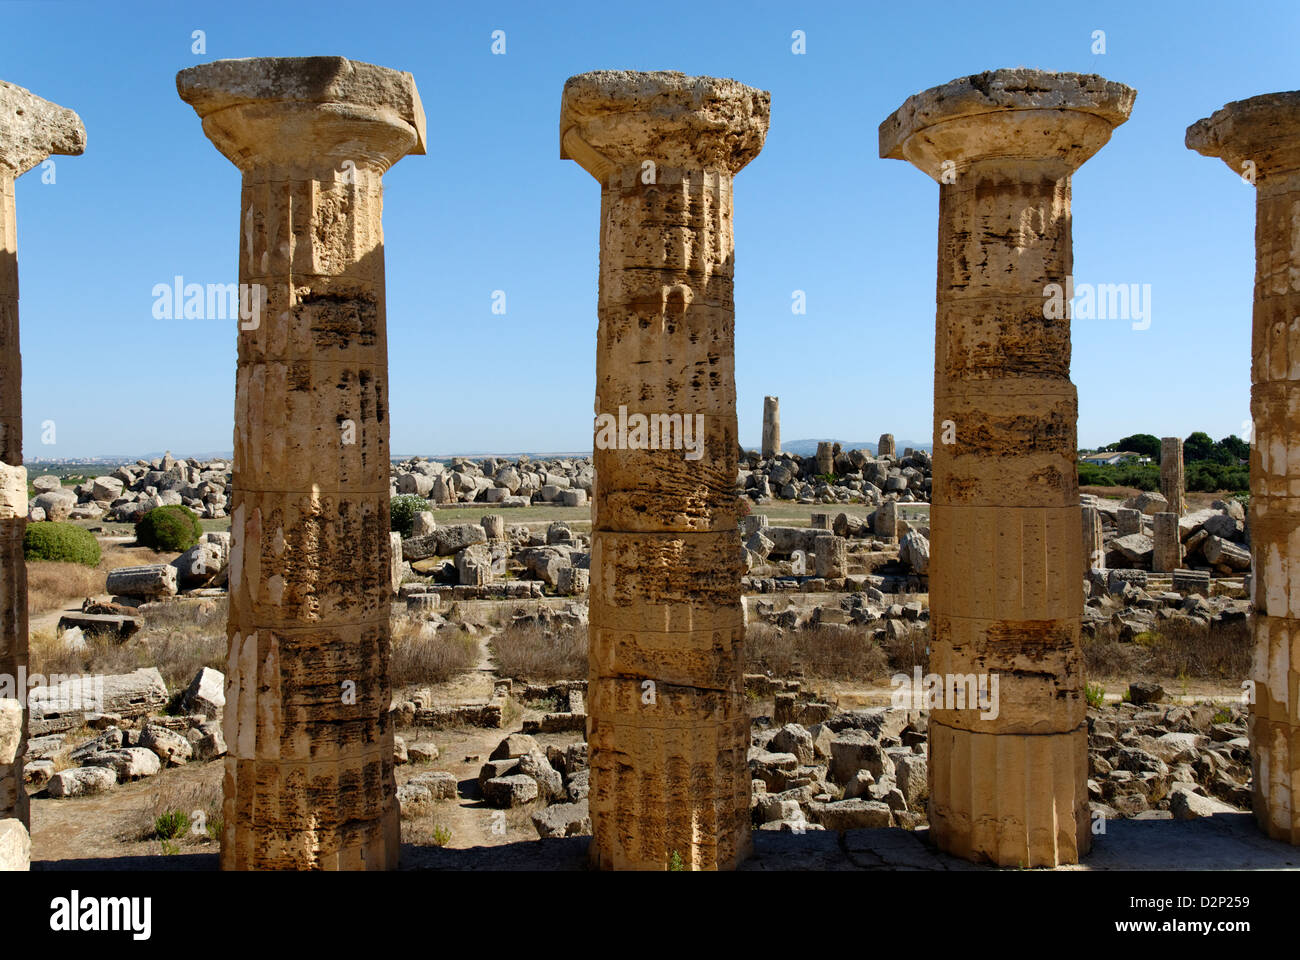 Selinunte. Sizilien. Italien. Blick auf die Ruinen der Tempel F und G durch die Spalten des 5. Jahrhunderts v. Chr. Tempel E. Griechisch dorischen Stockfoto